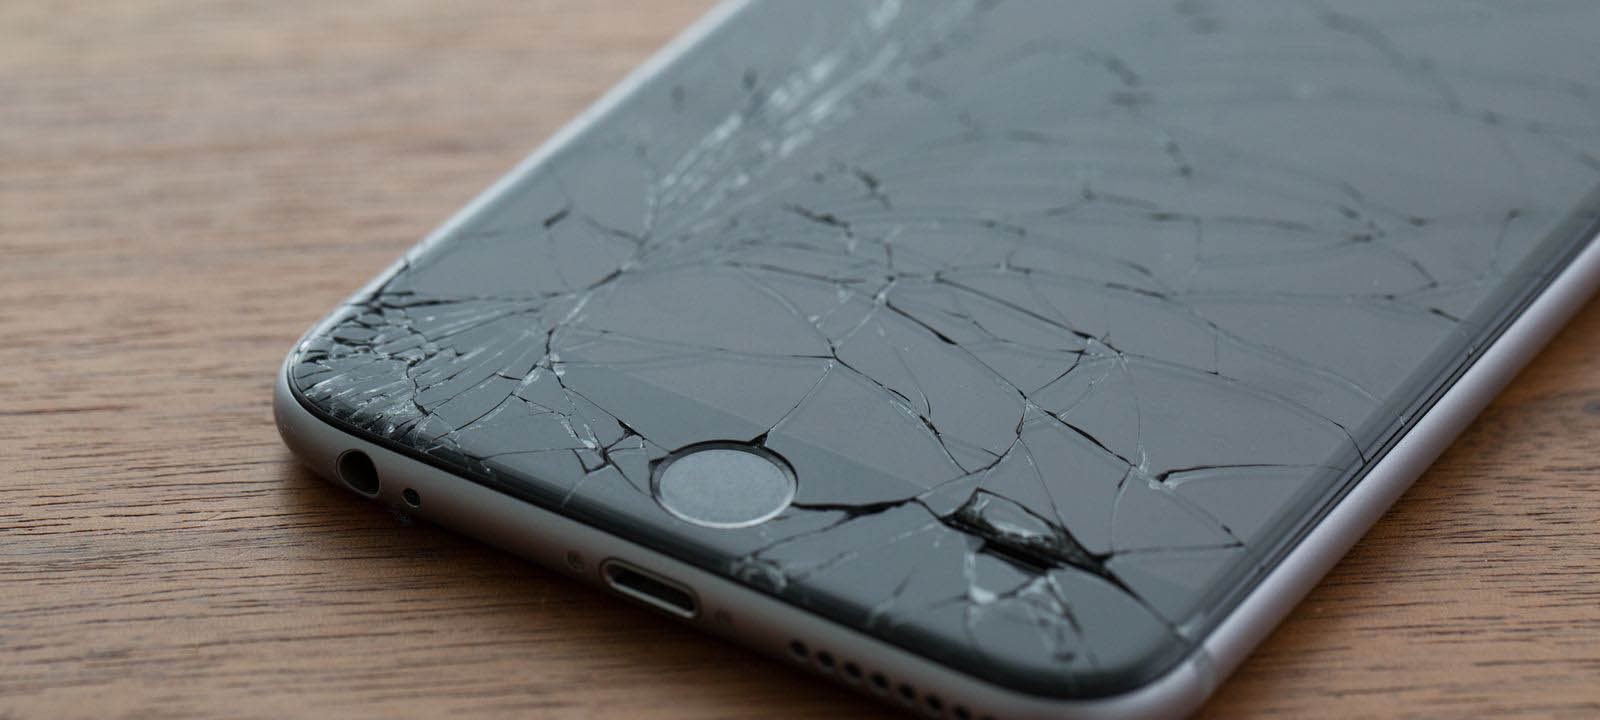 iPhone Xr : la réparation de l'écran vous coutera 221 euros - CNET France